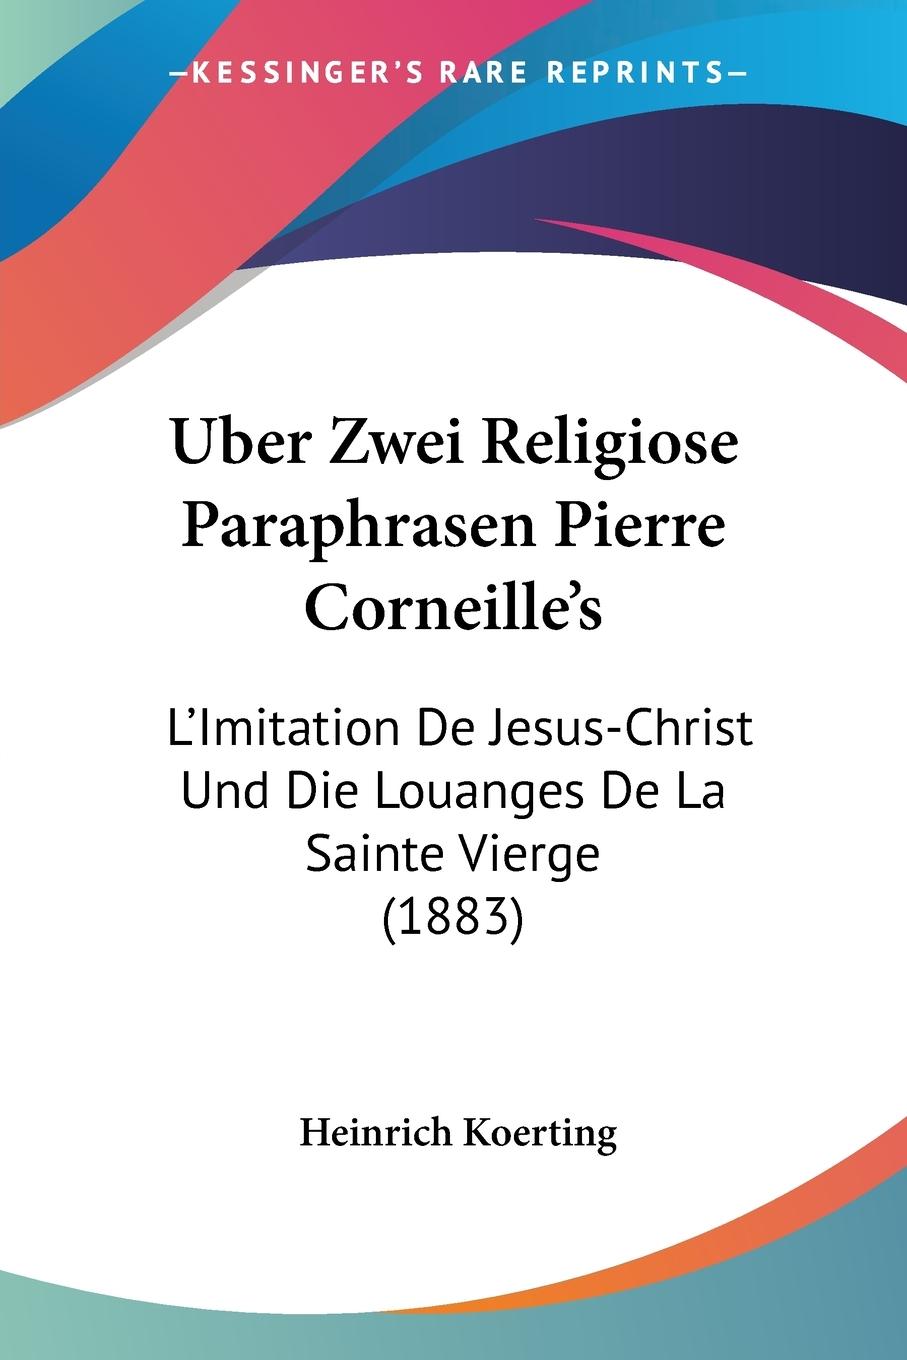 Uber Zwei Religiose Paraphrasen Pierre Corneille s - Koerting, Heinrich